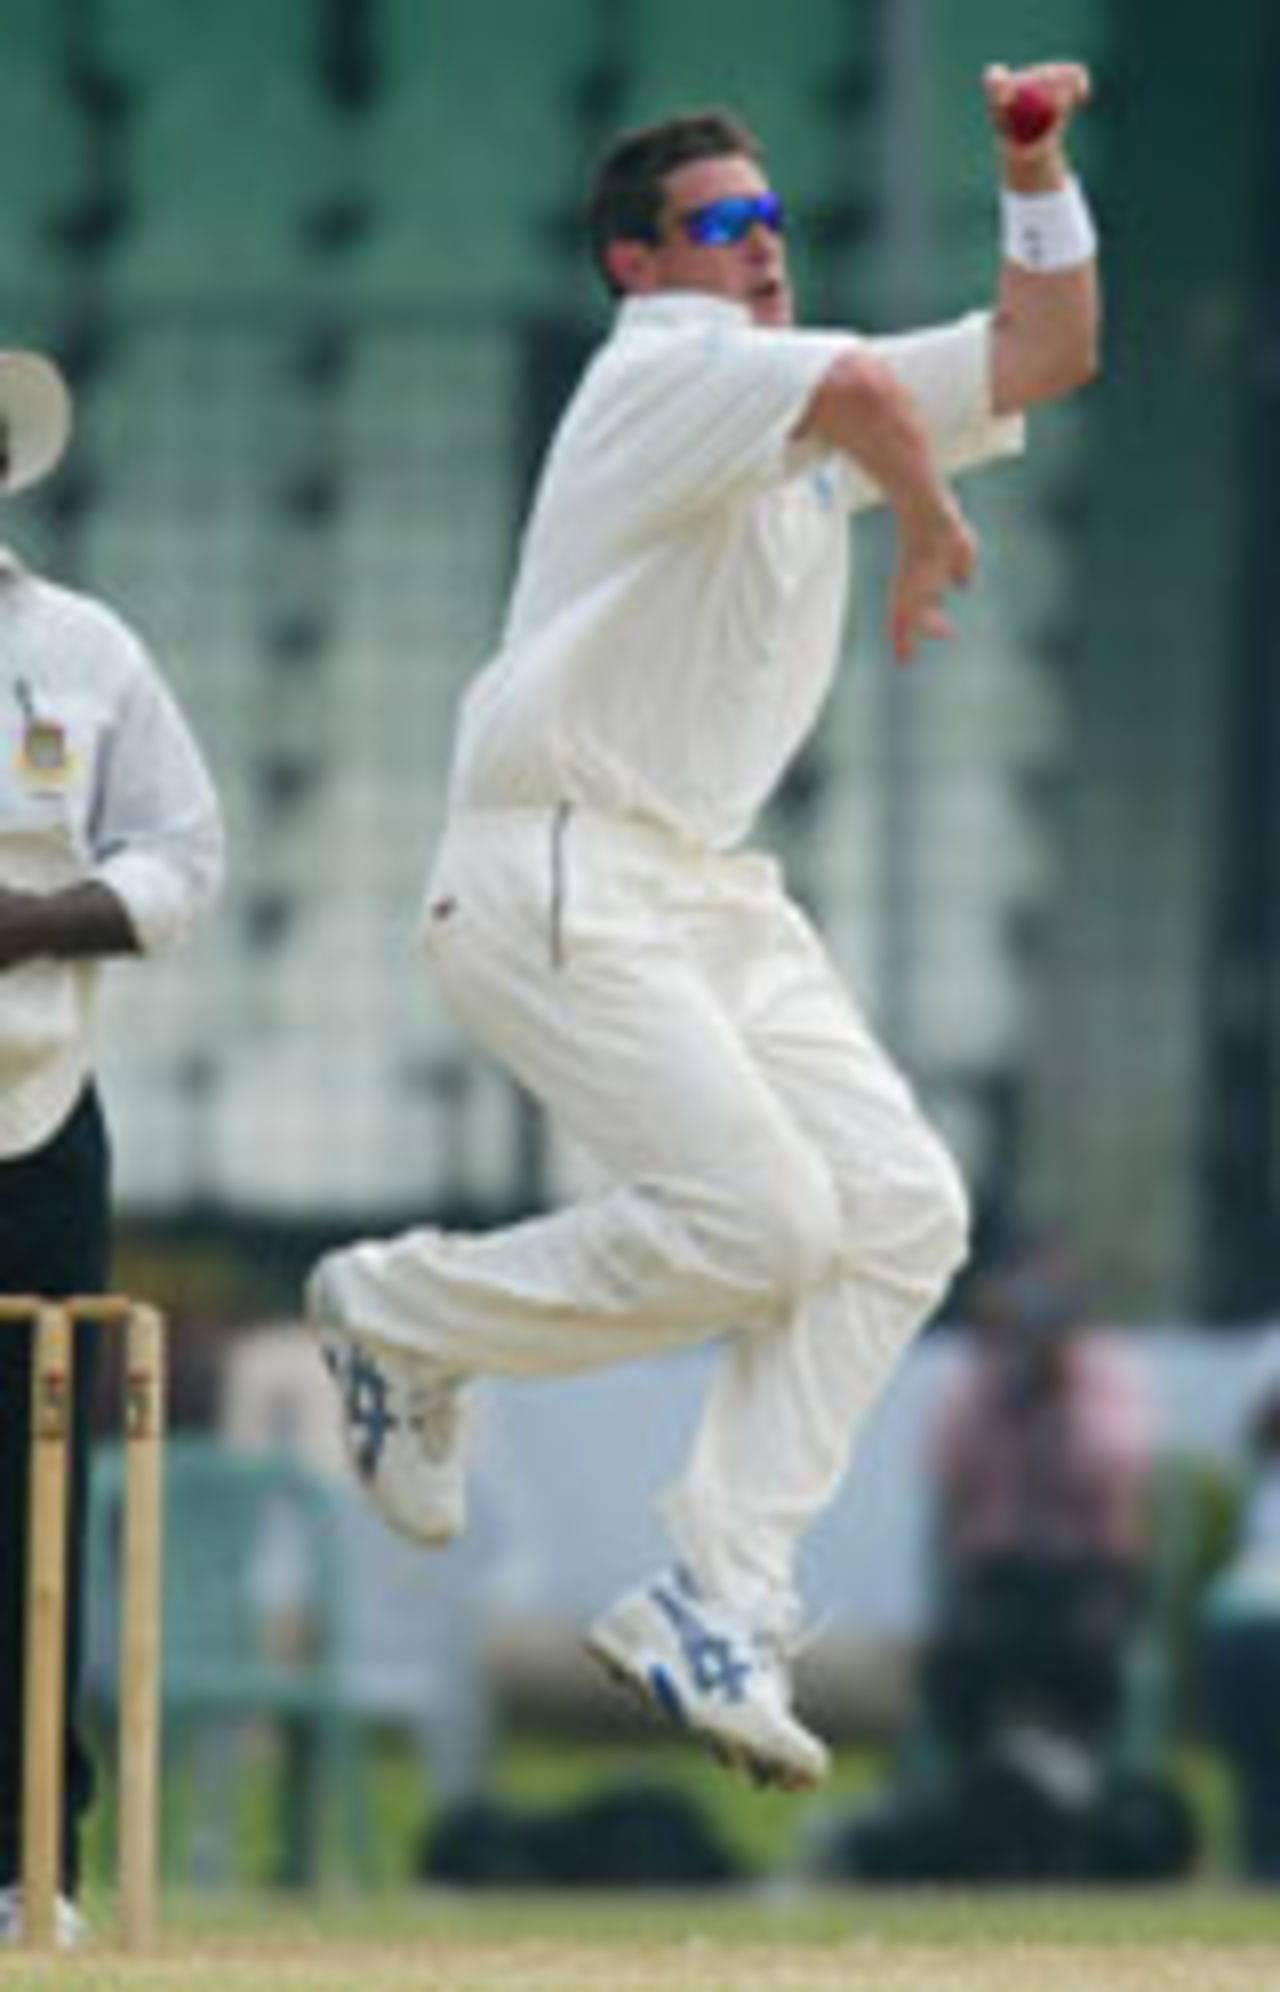 Ashley Giles bowling, Eng v Bang Pres XI, Day 3, Dhaka, October 14, 2003